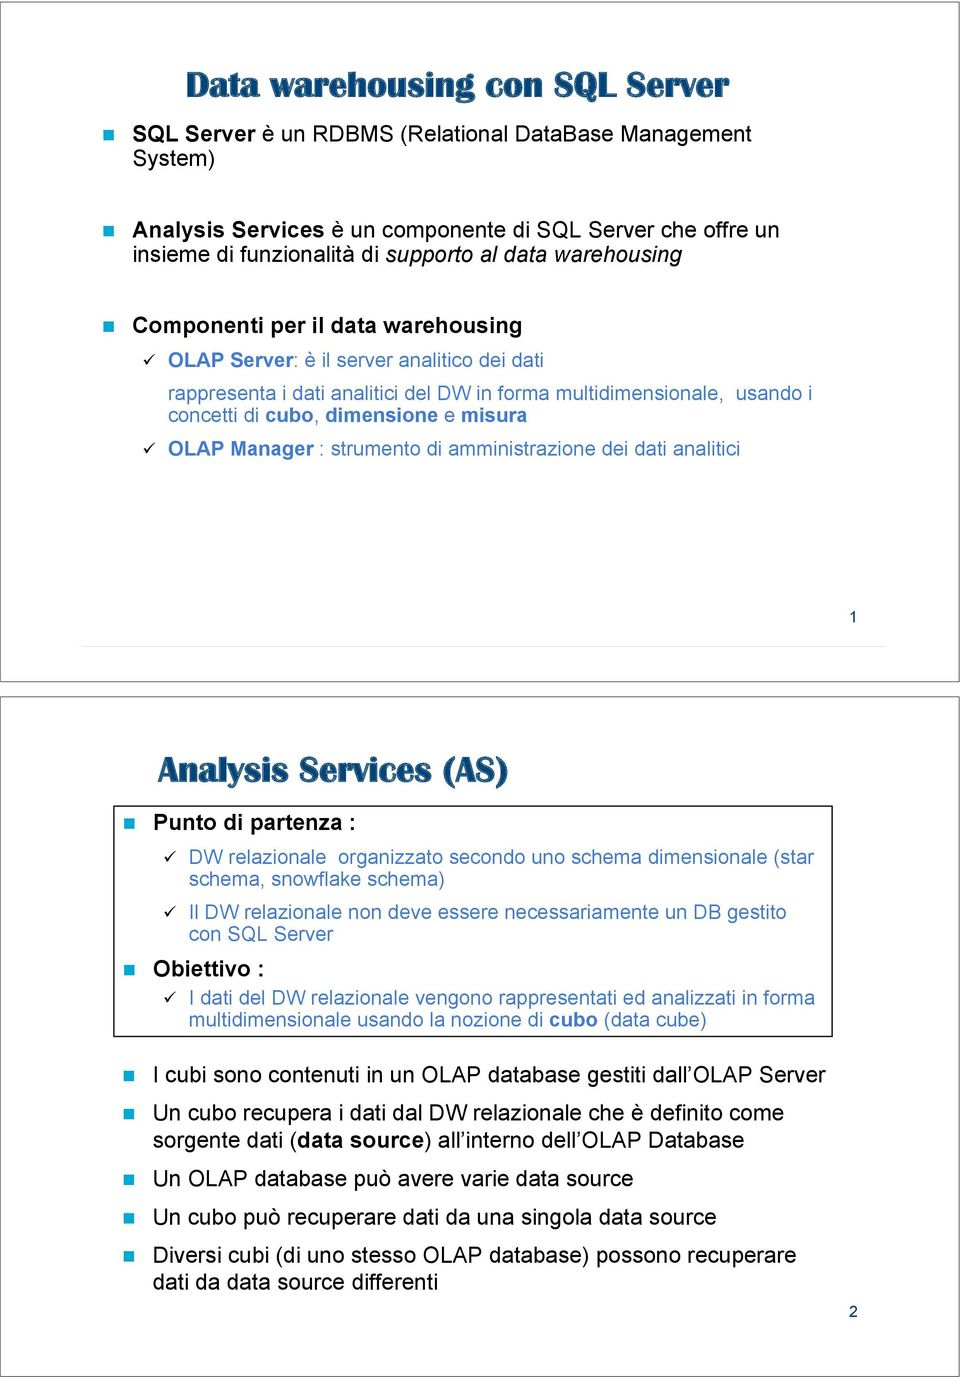 Componenti per il data warehousing " OLAP Server: è il server analitico dei dati rappresenta i dati analitici del DW in forma multidimensionale, usando i concetti di cubo, dimensione e misura " OLAP